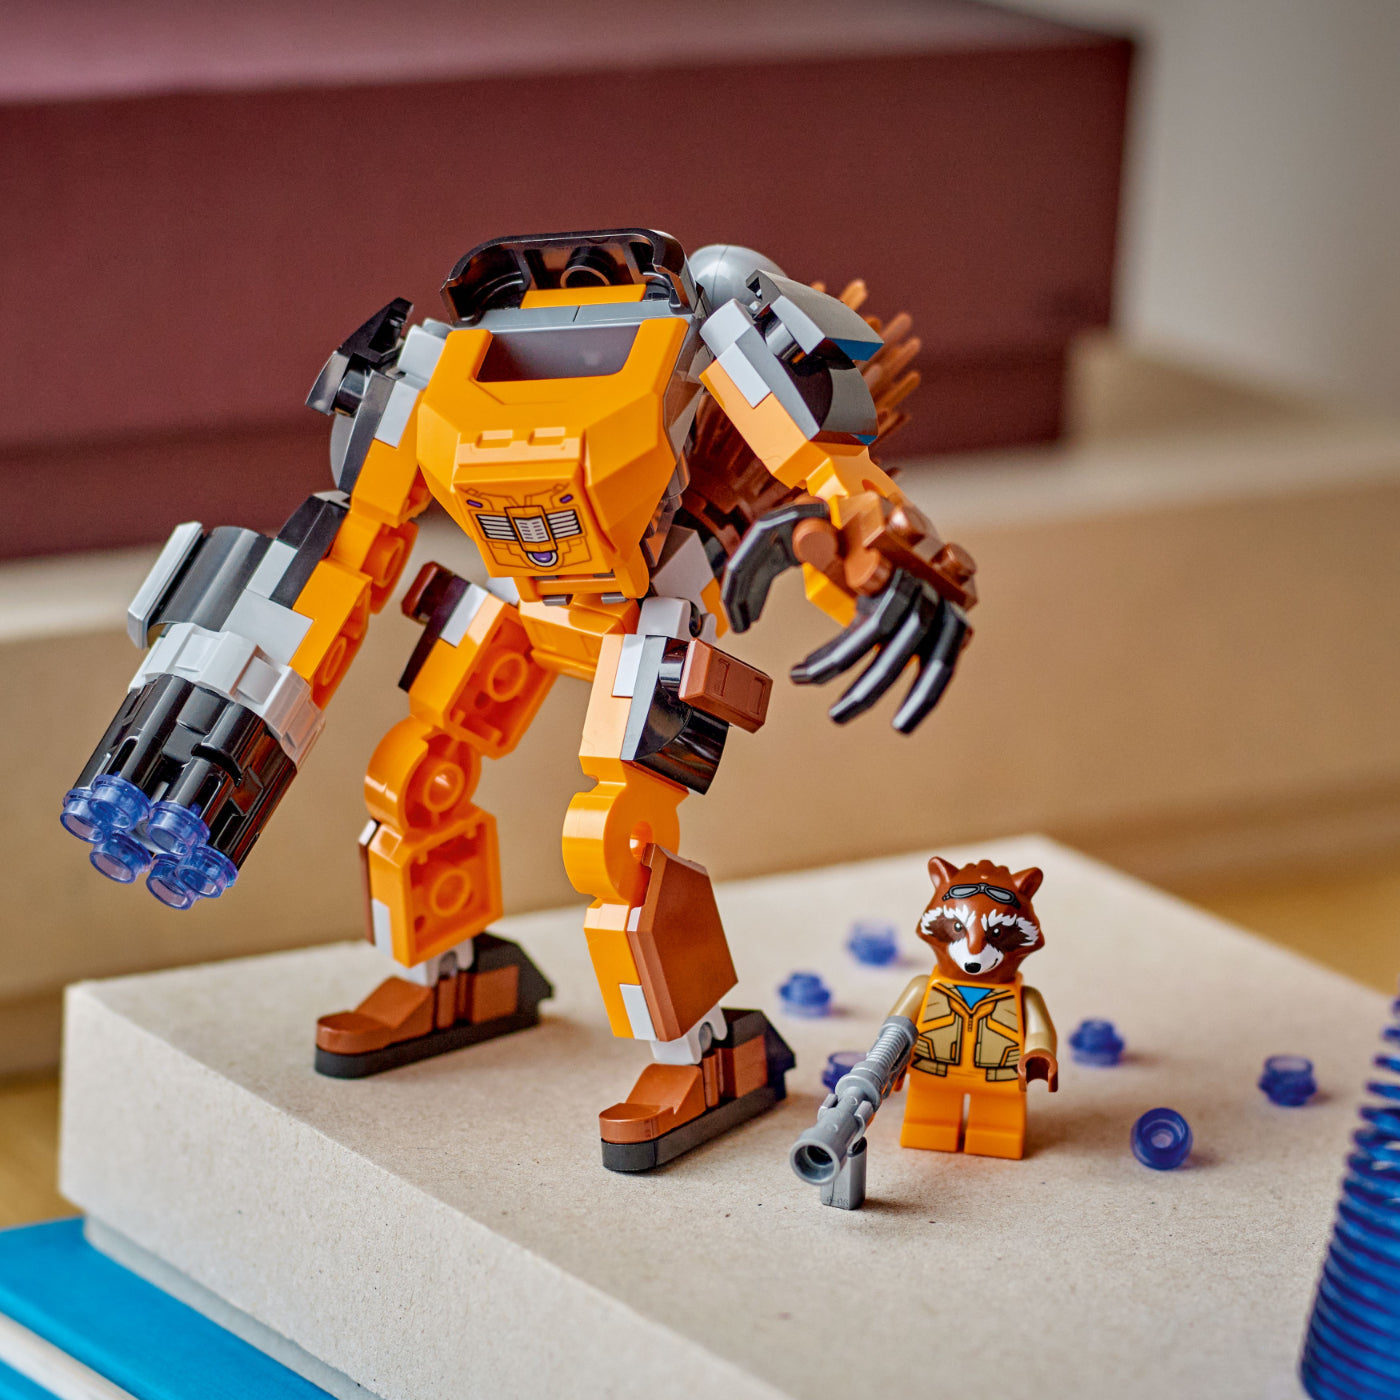 LEGO® Marvel Armadura Robótica de Rocket (76243)